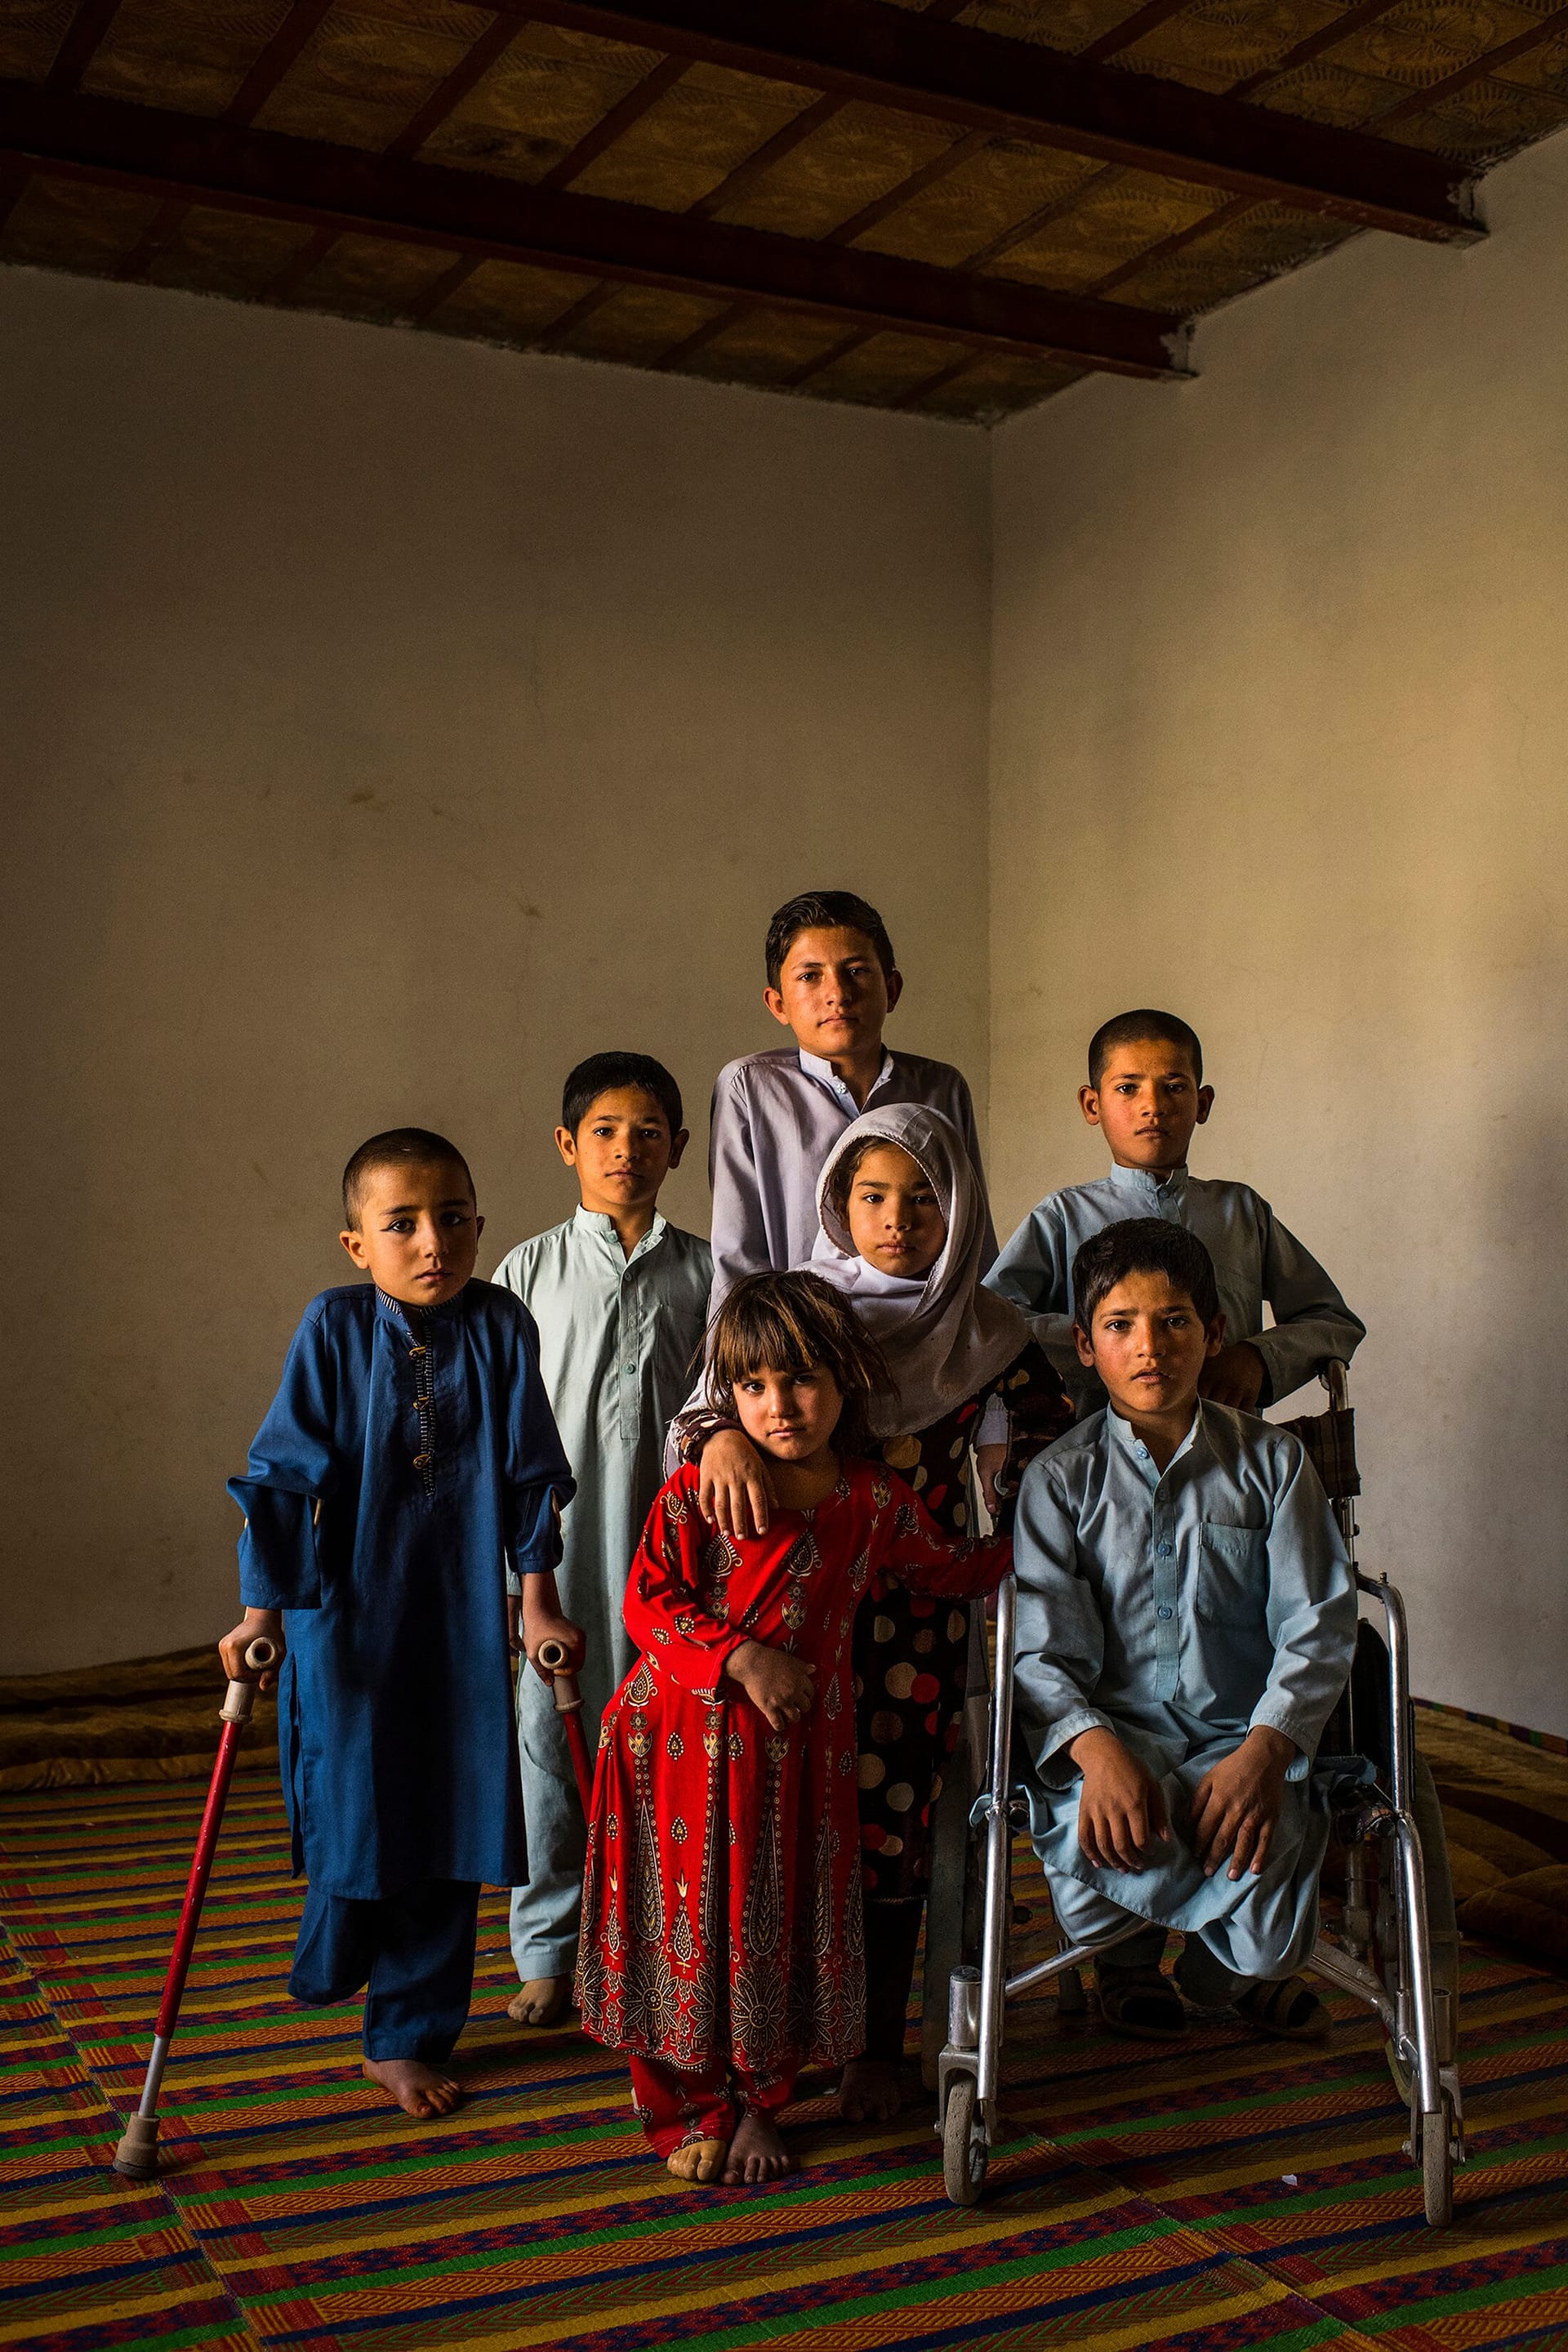 Zweiter Platz beim Unicef-Foto des Jahres 2019: Das Bild zeigt sieben afghanische Kinder aus einem Dorf im Distrikt Surkh Rod, die bei der Explosion eines Blindgängers schwer verletzt wurden.